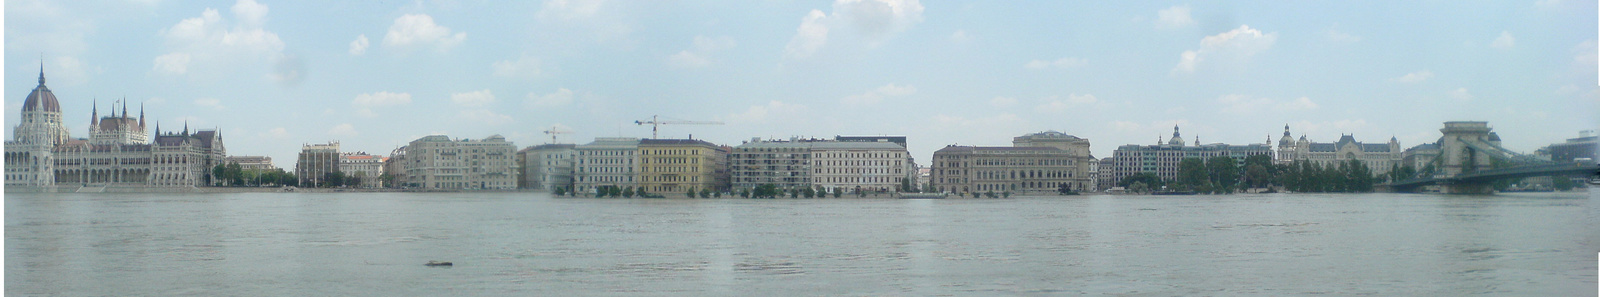 2010 Duna árvíz Budapest (széles panoráma, egy kis varrathibával